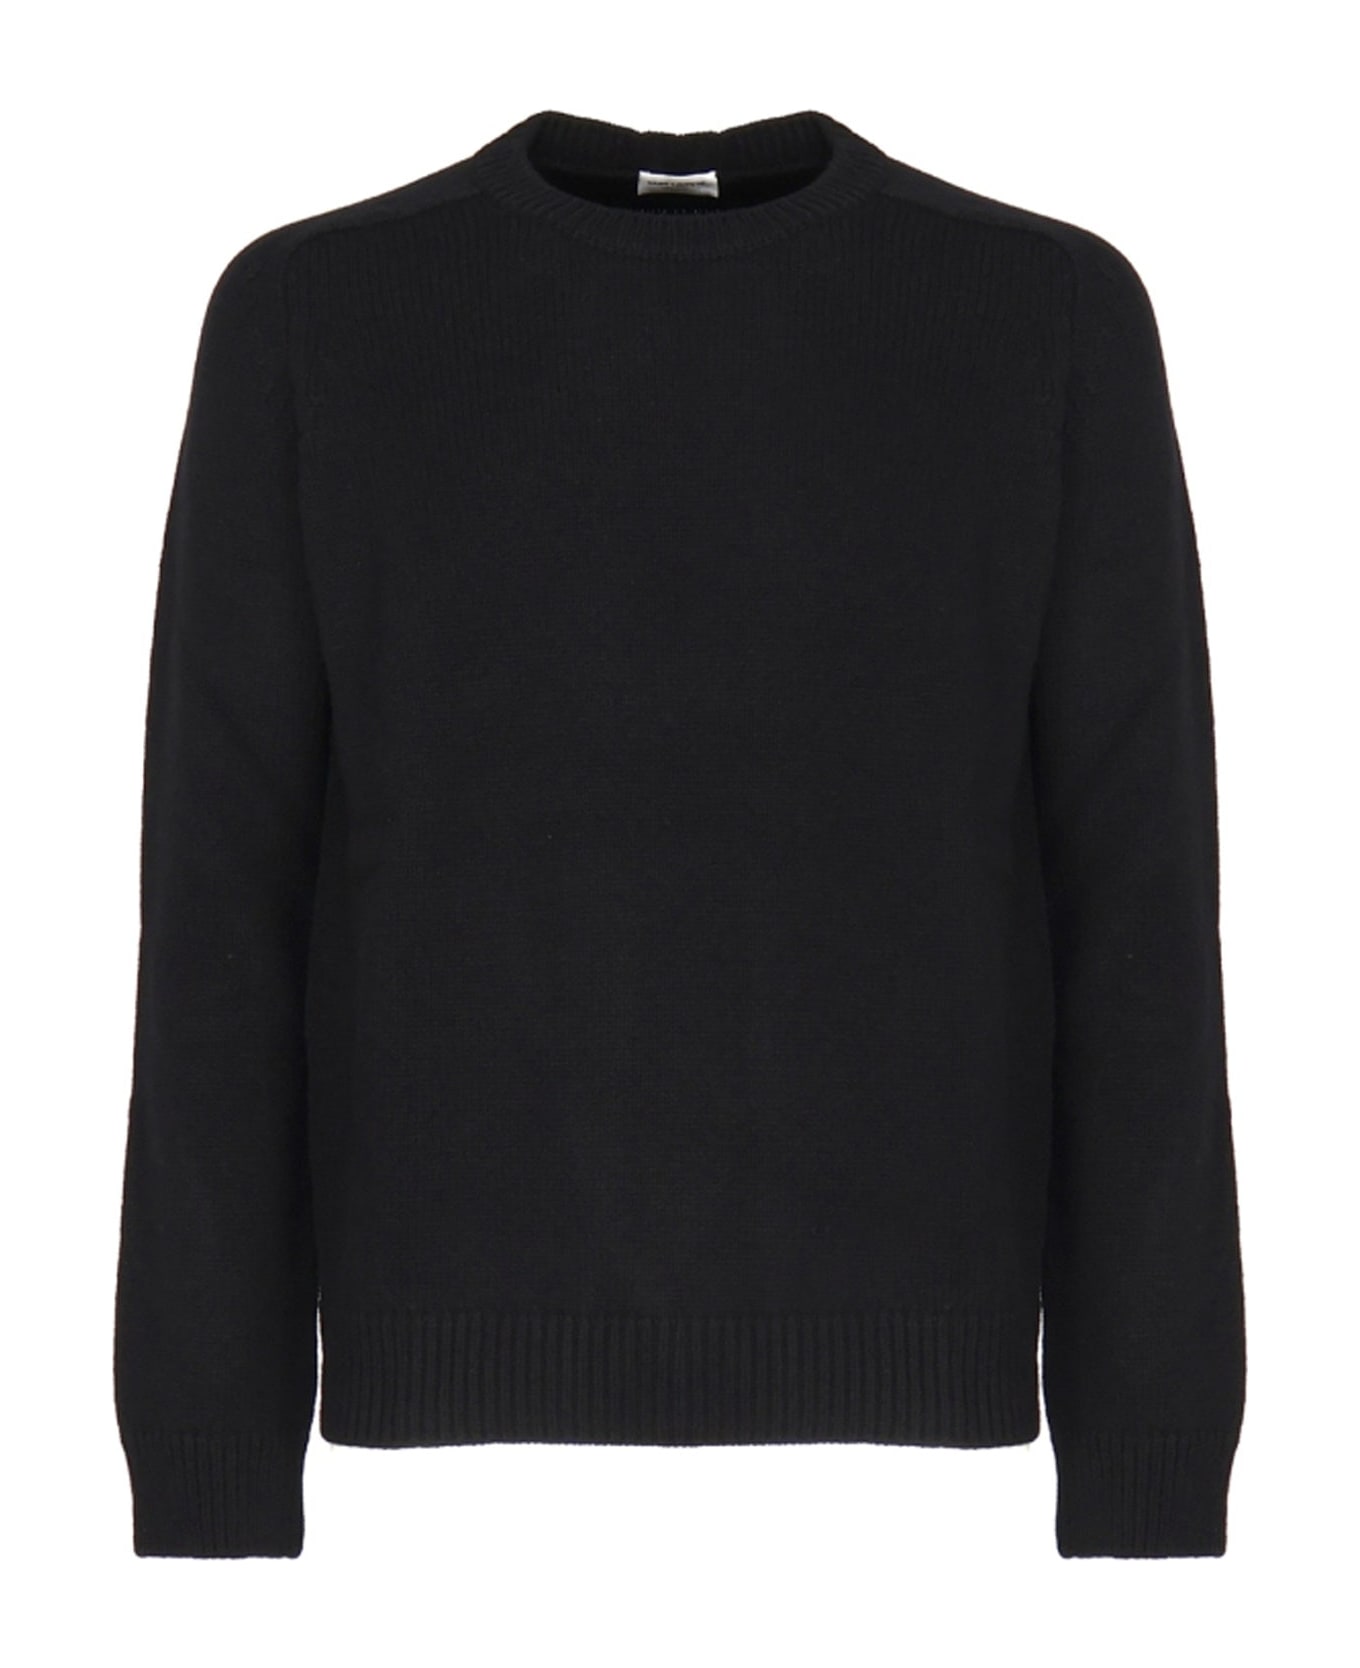 Saint Laurent Cashmere Sweater - Black